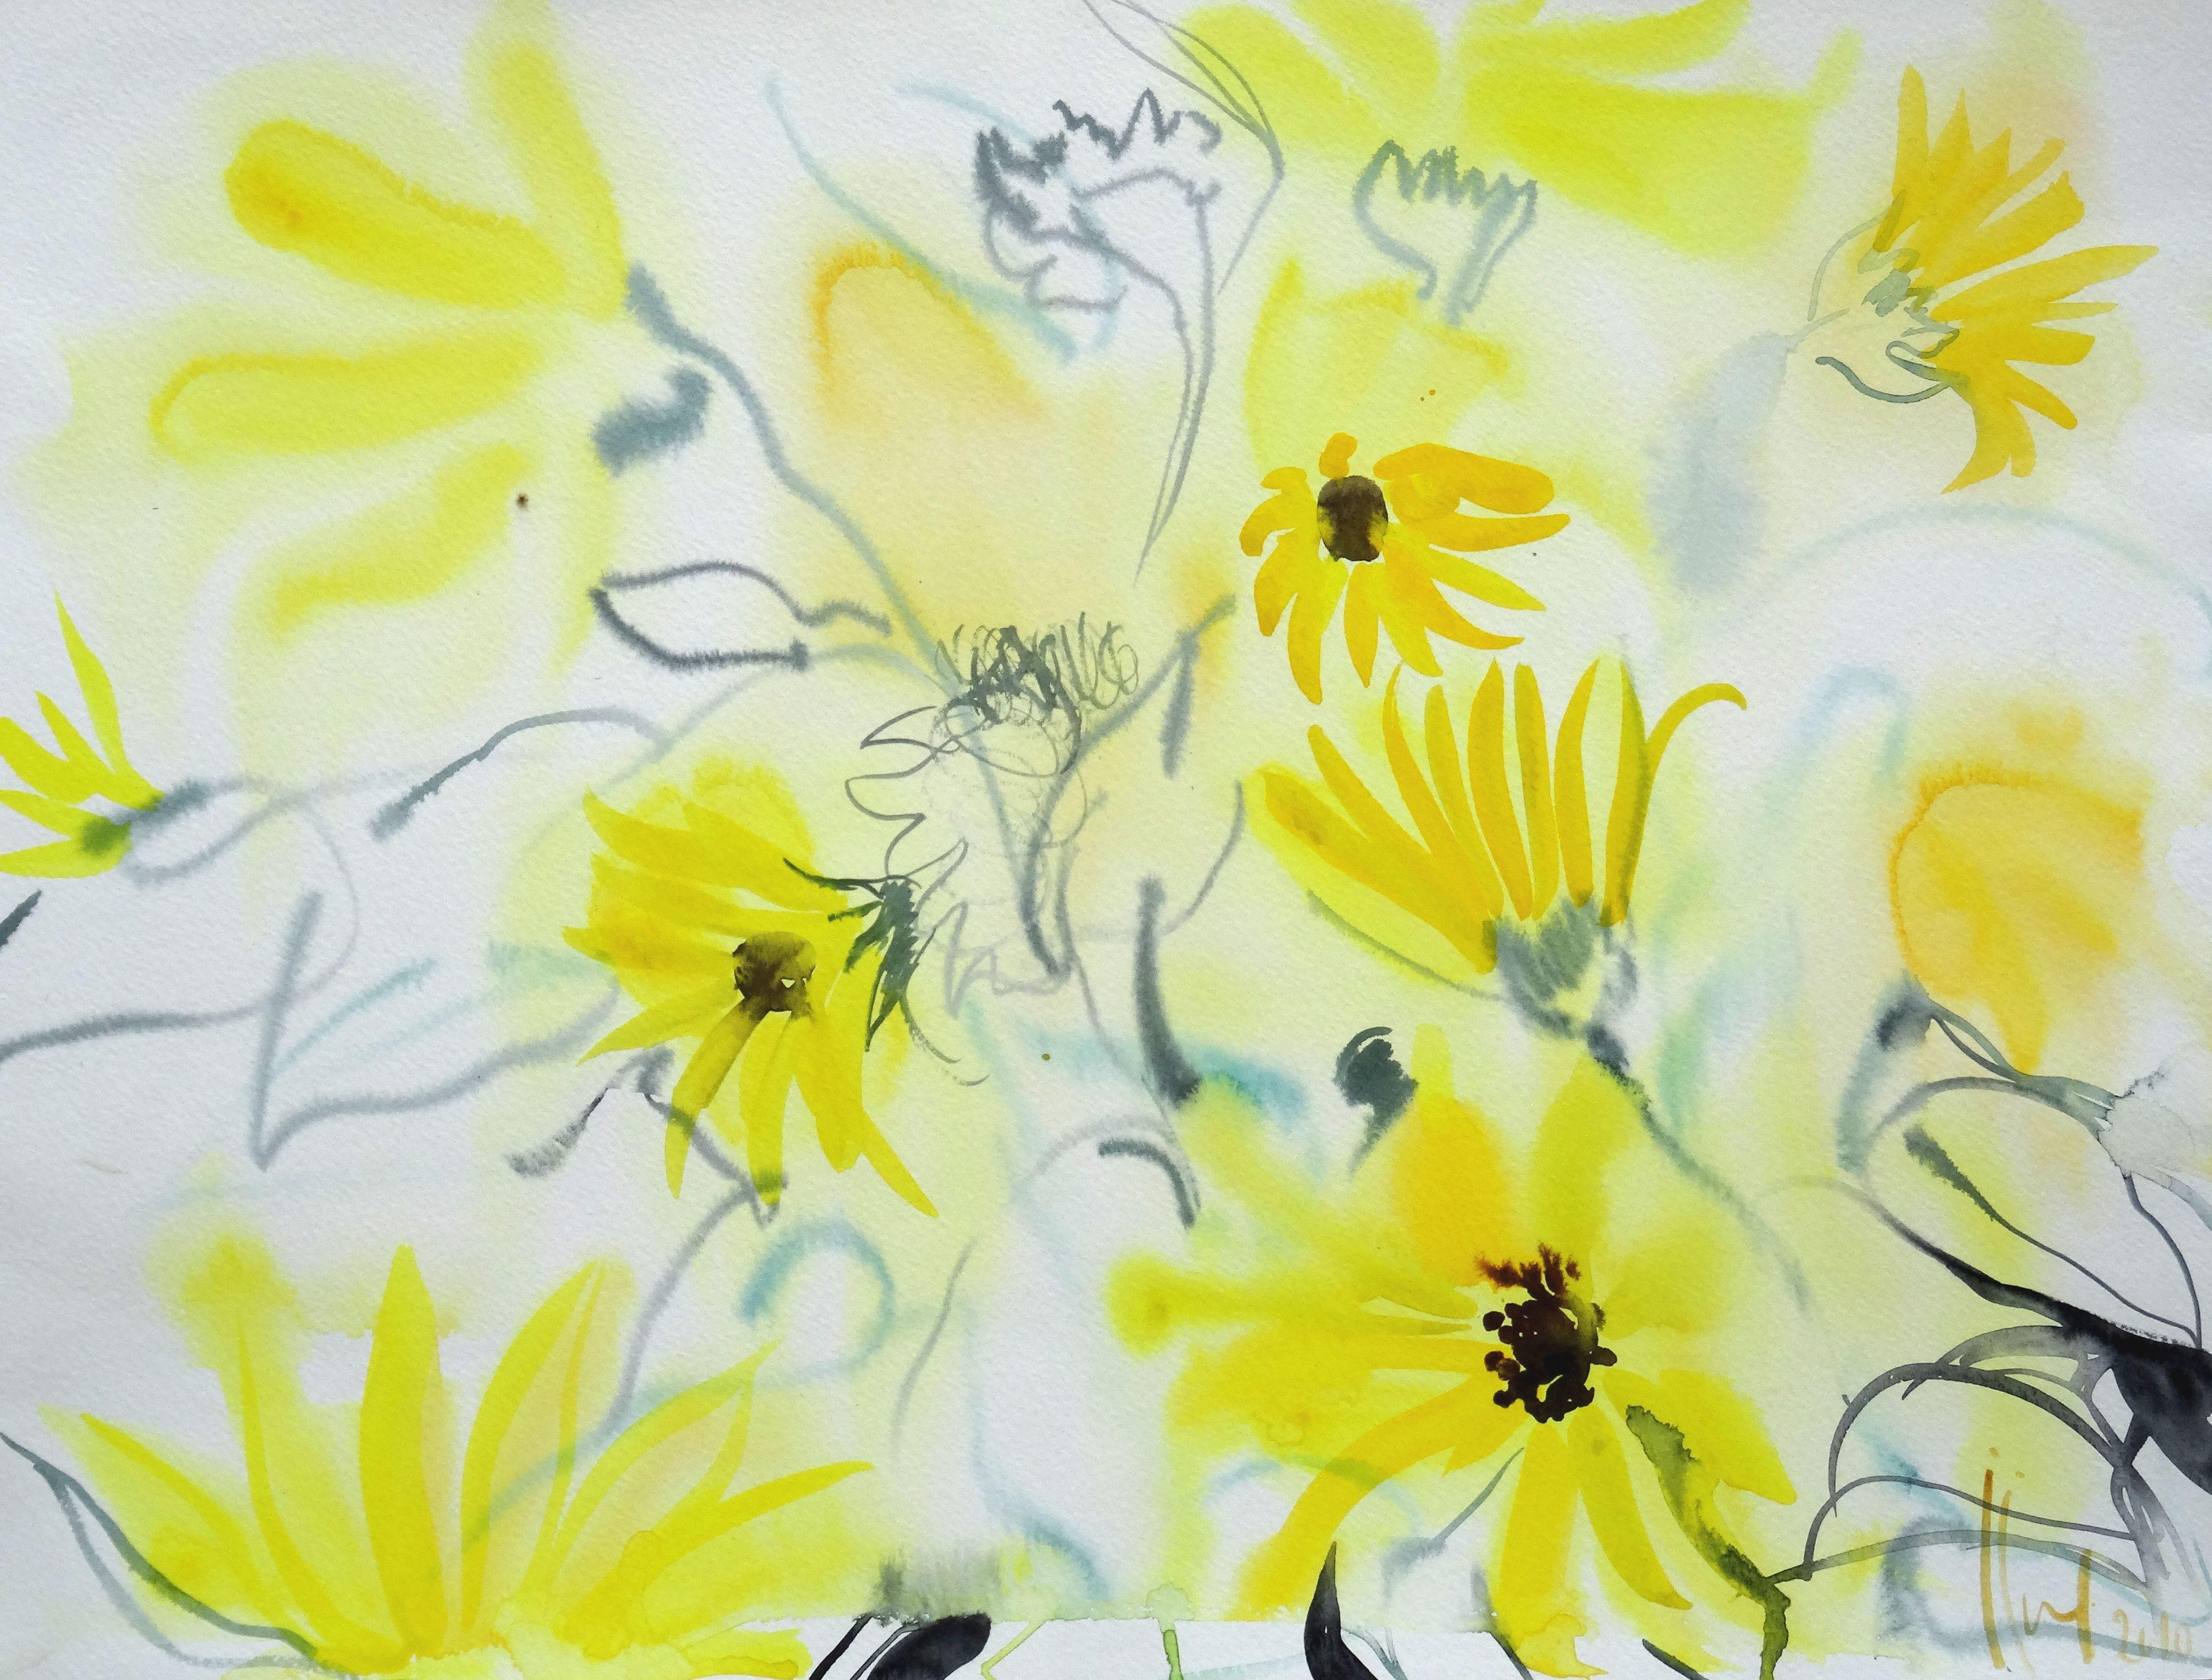 Gelbe Blumen im Garten der Tuileries. 2010. Aquarell auf Papier, 60,96 x 60,96 cm